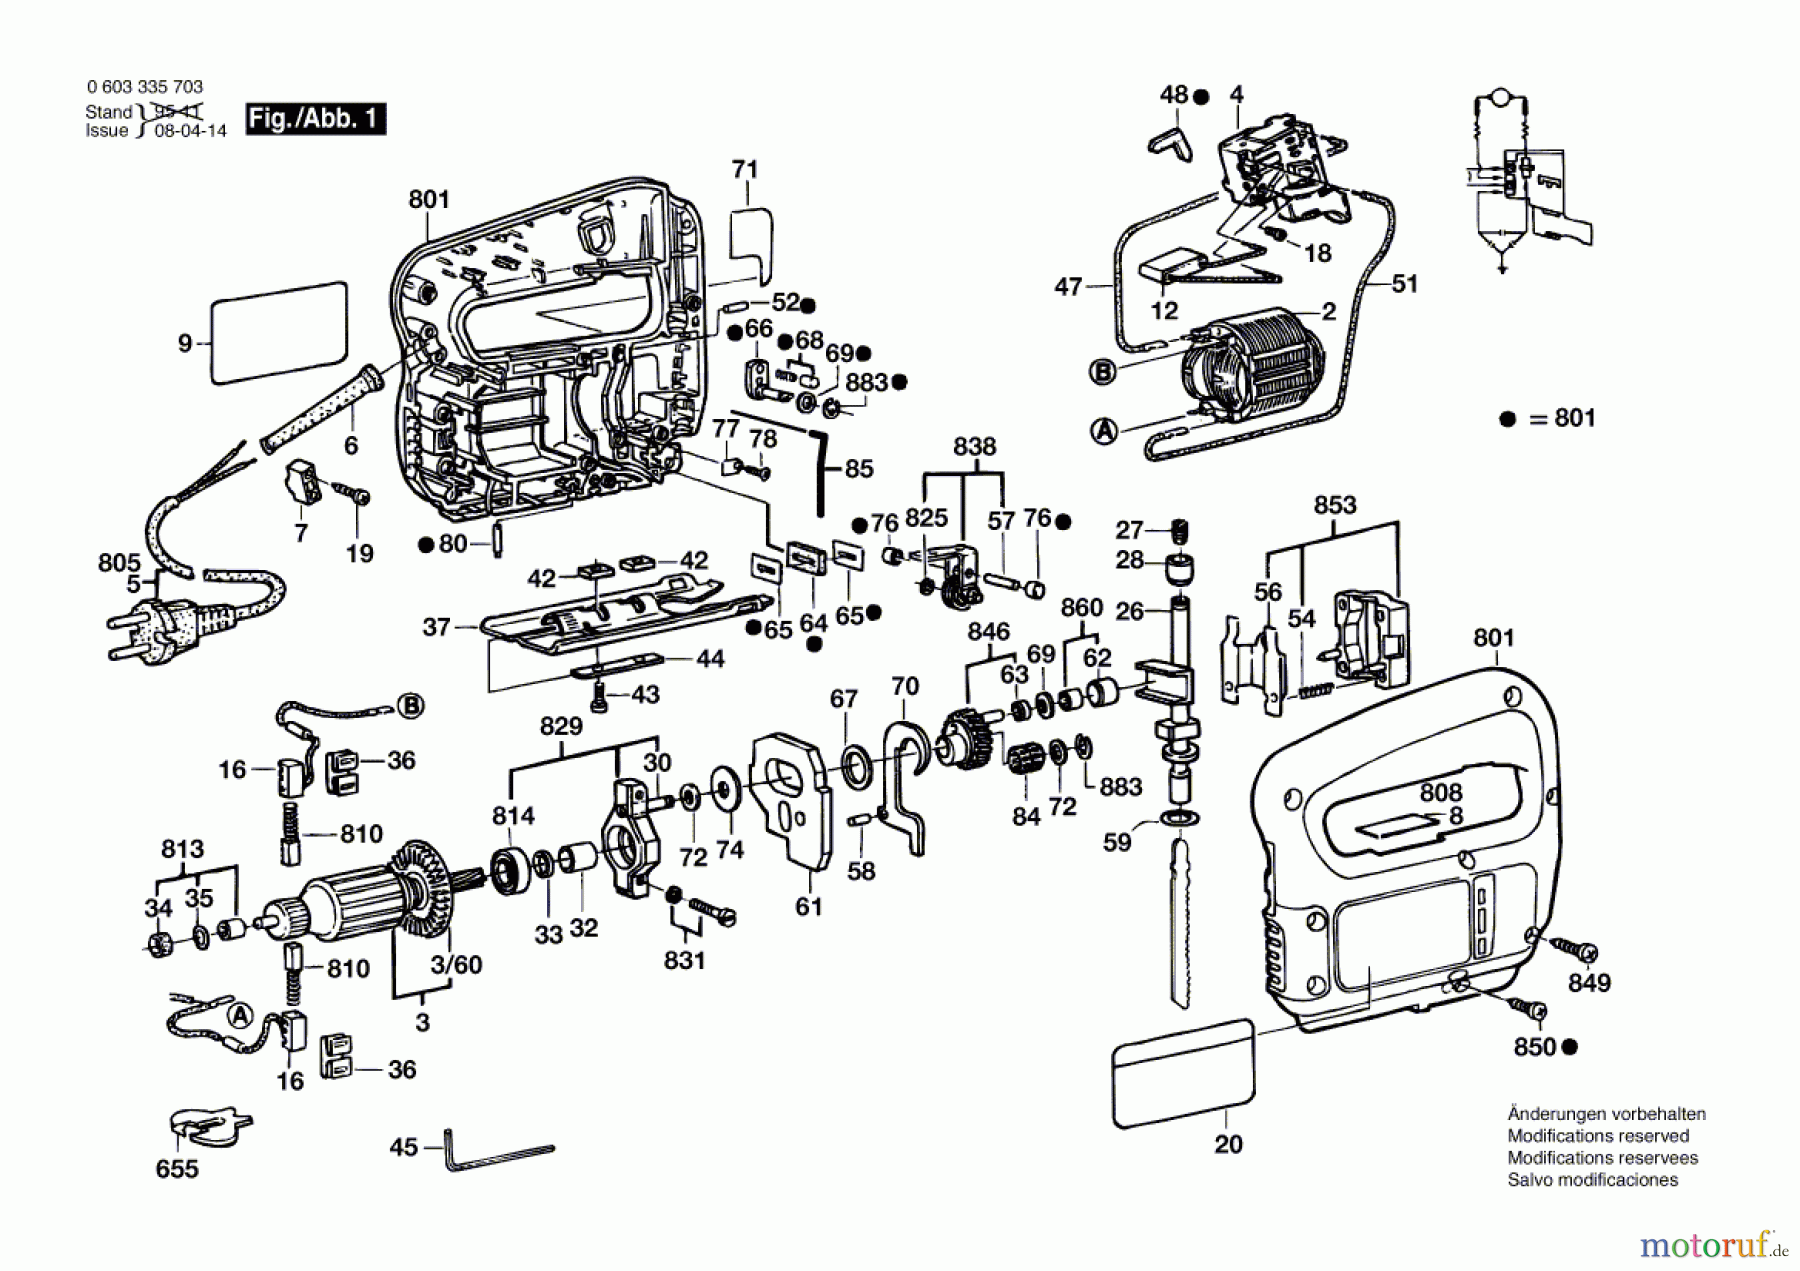  Bosch Werkzeug Stichsäge PST 58 PE Seite 1